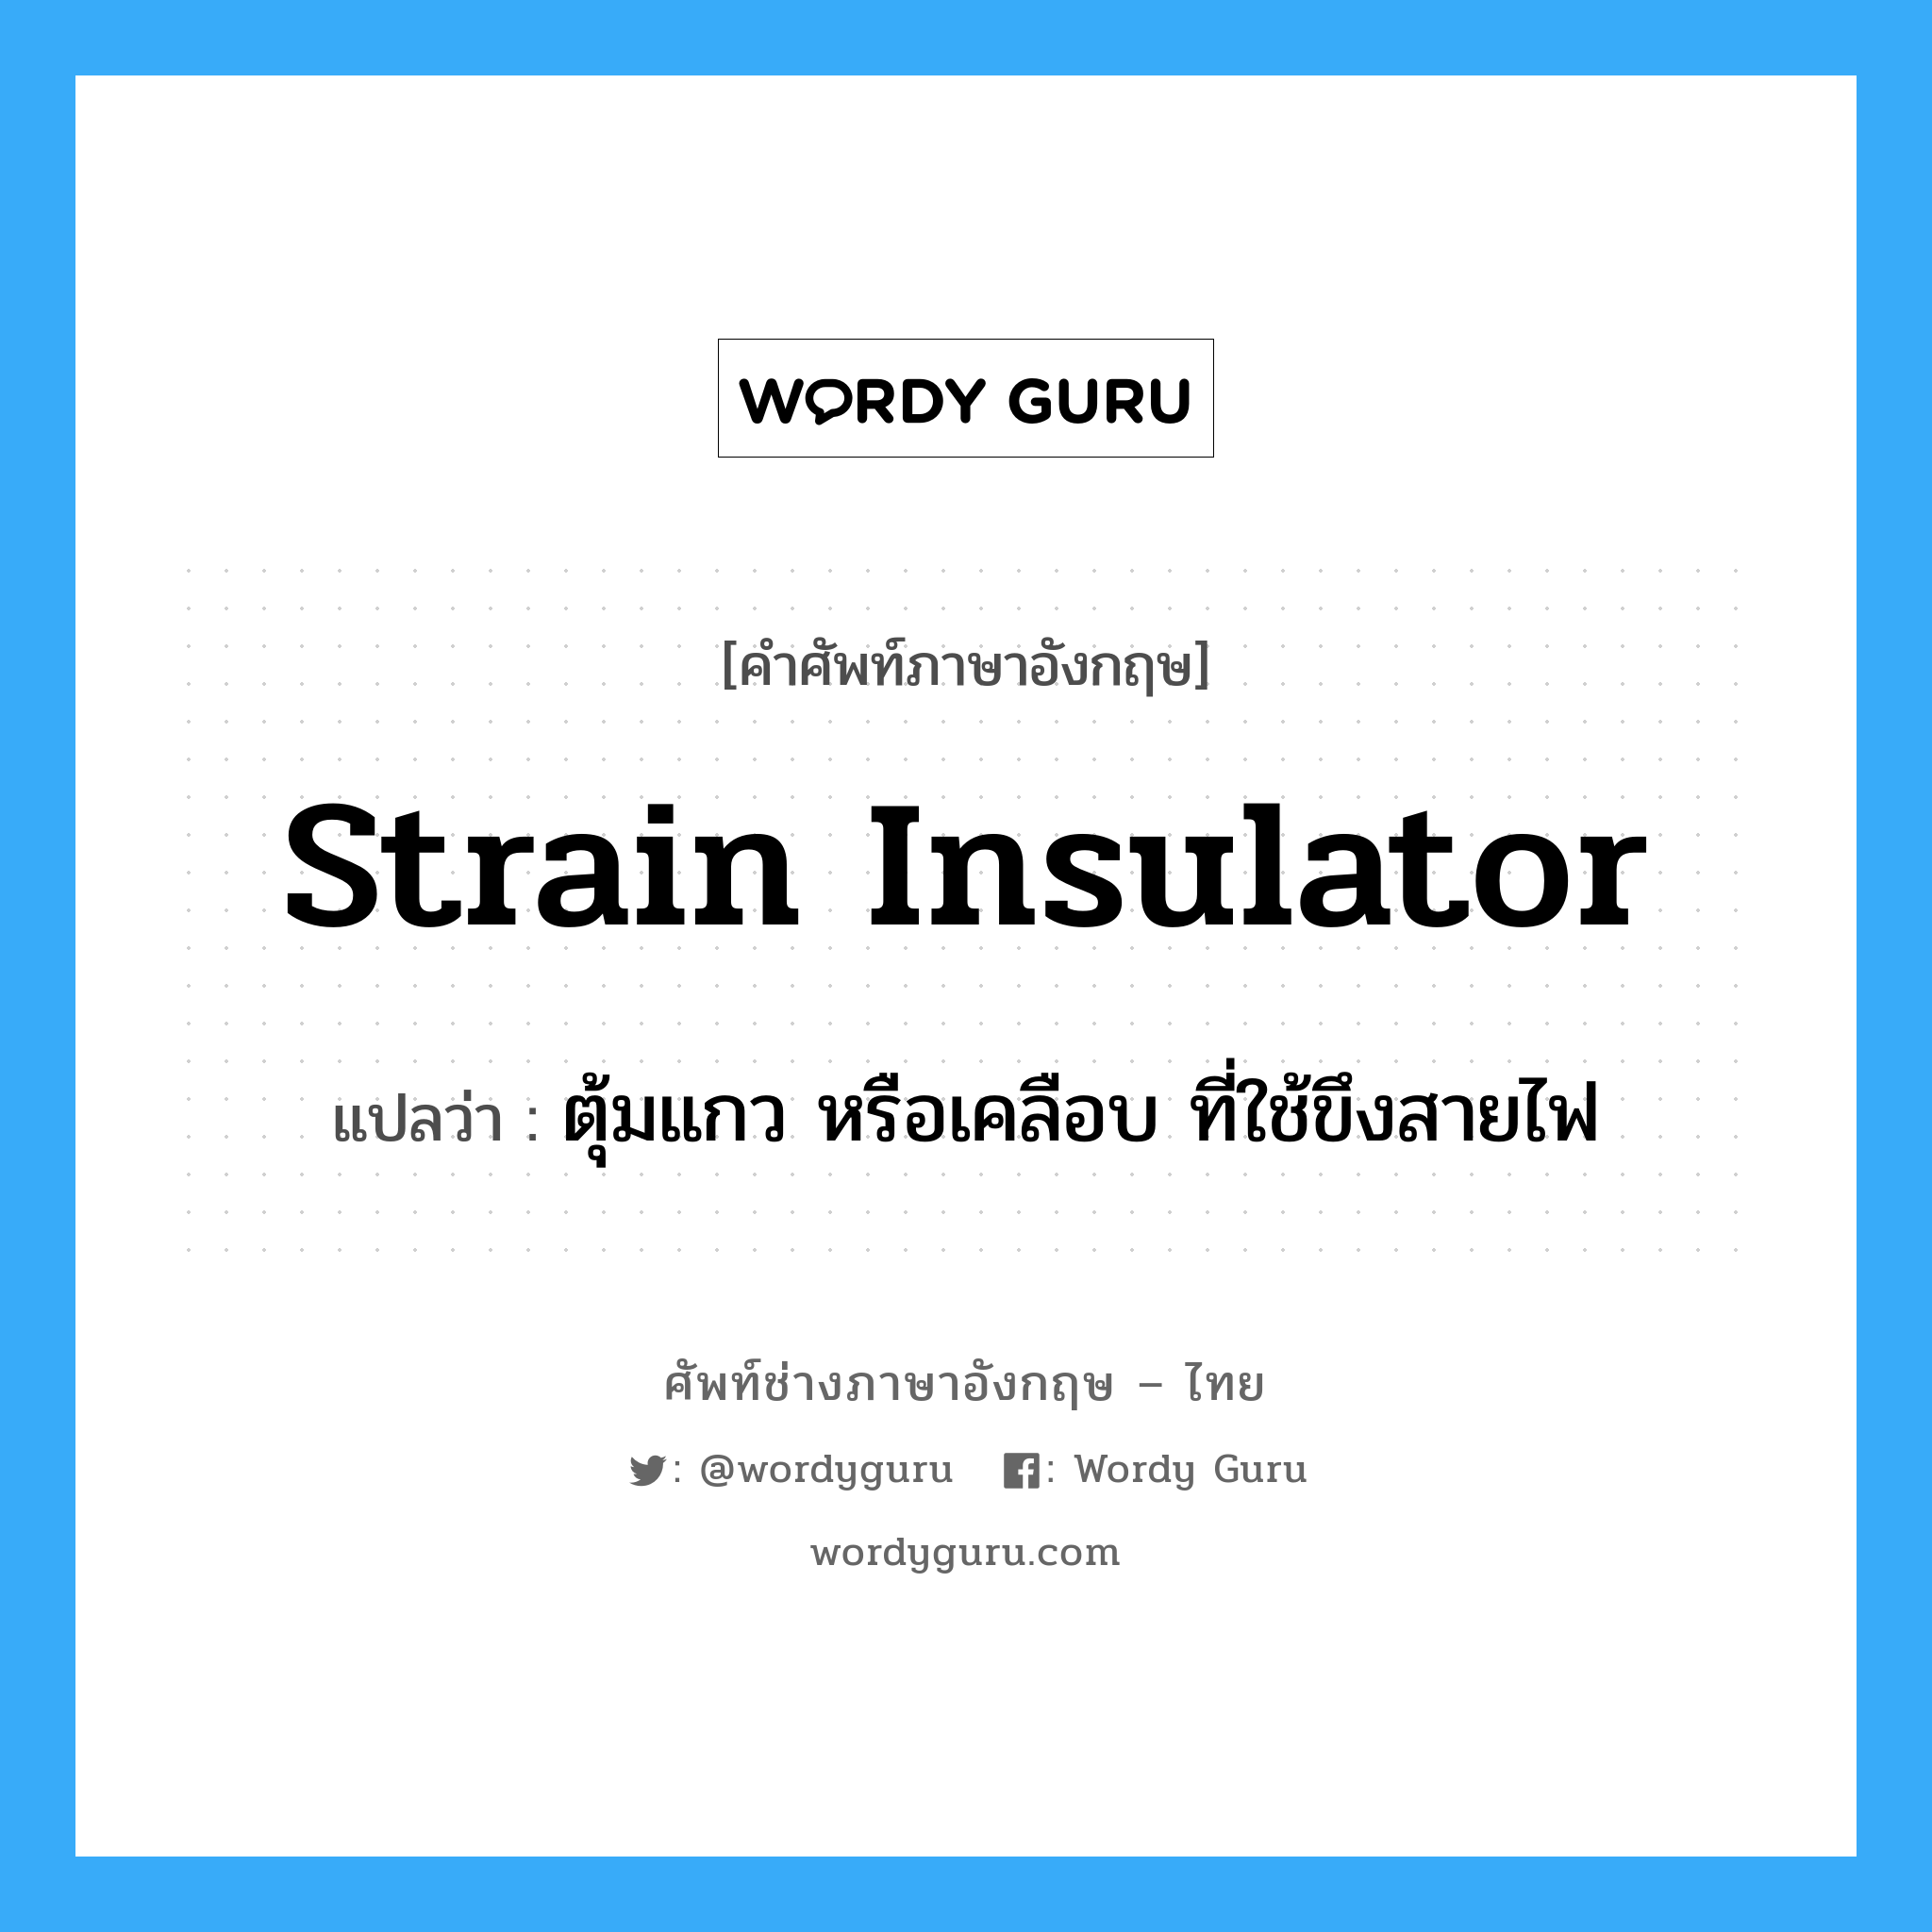 strain insulator แปลว่า?, คำศัพท์ช่างภาษาอังกฤษ - ไทย strain insulator คำศัพท์ภาษาอังกฤษ strain insulator แปลว่า ตุ้มแกว หรือเคลือบ ที่ใช้ขึงสายไฟ